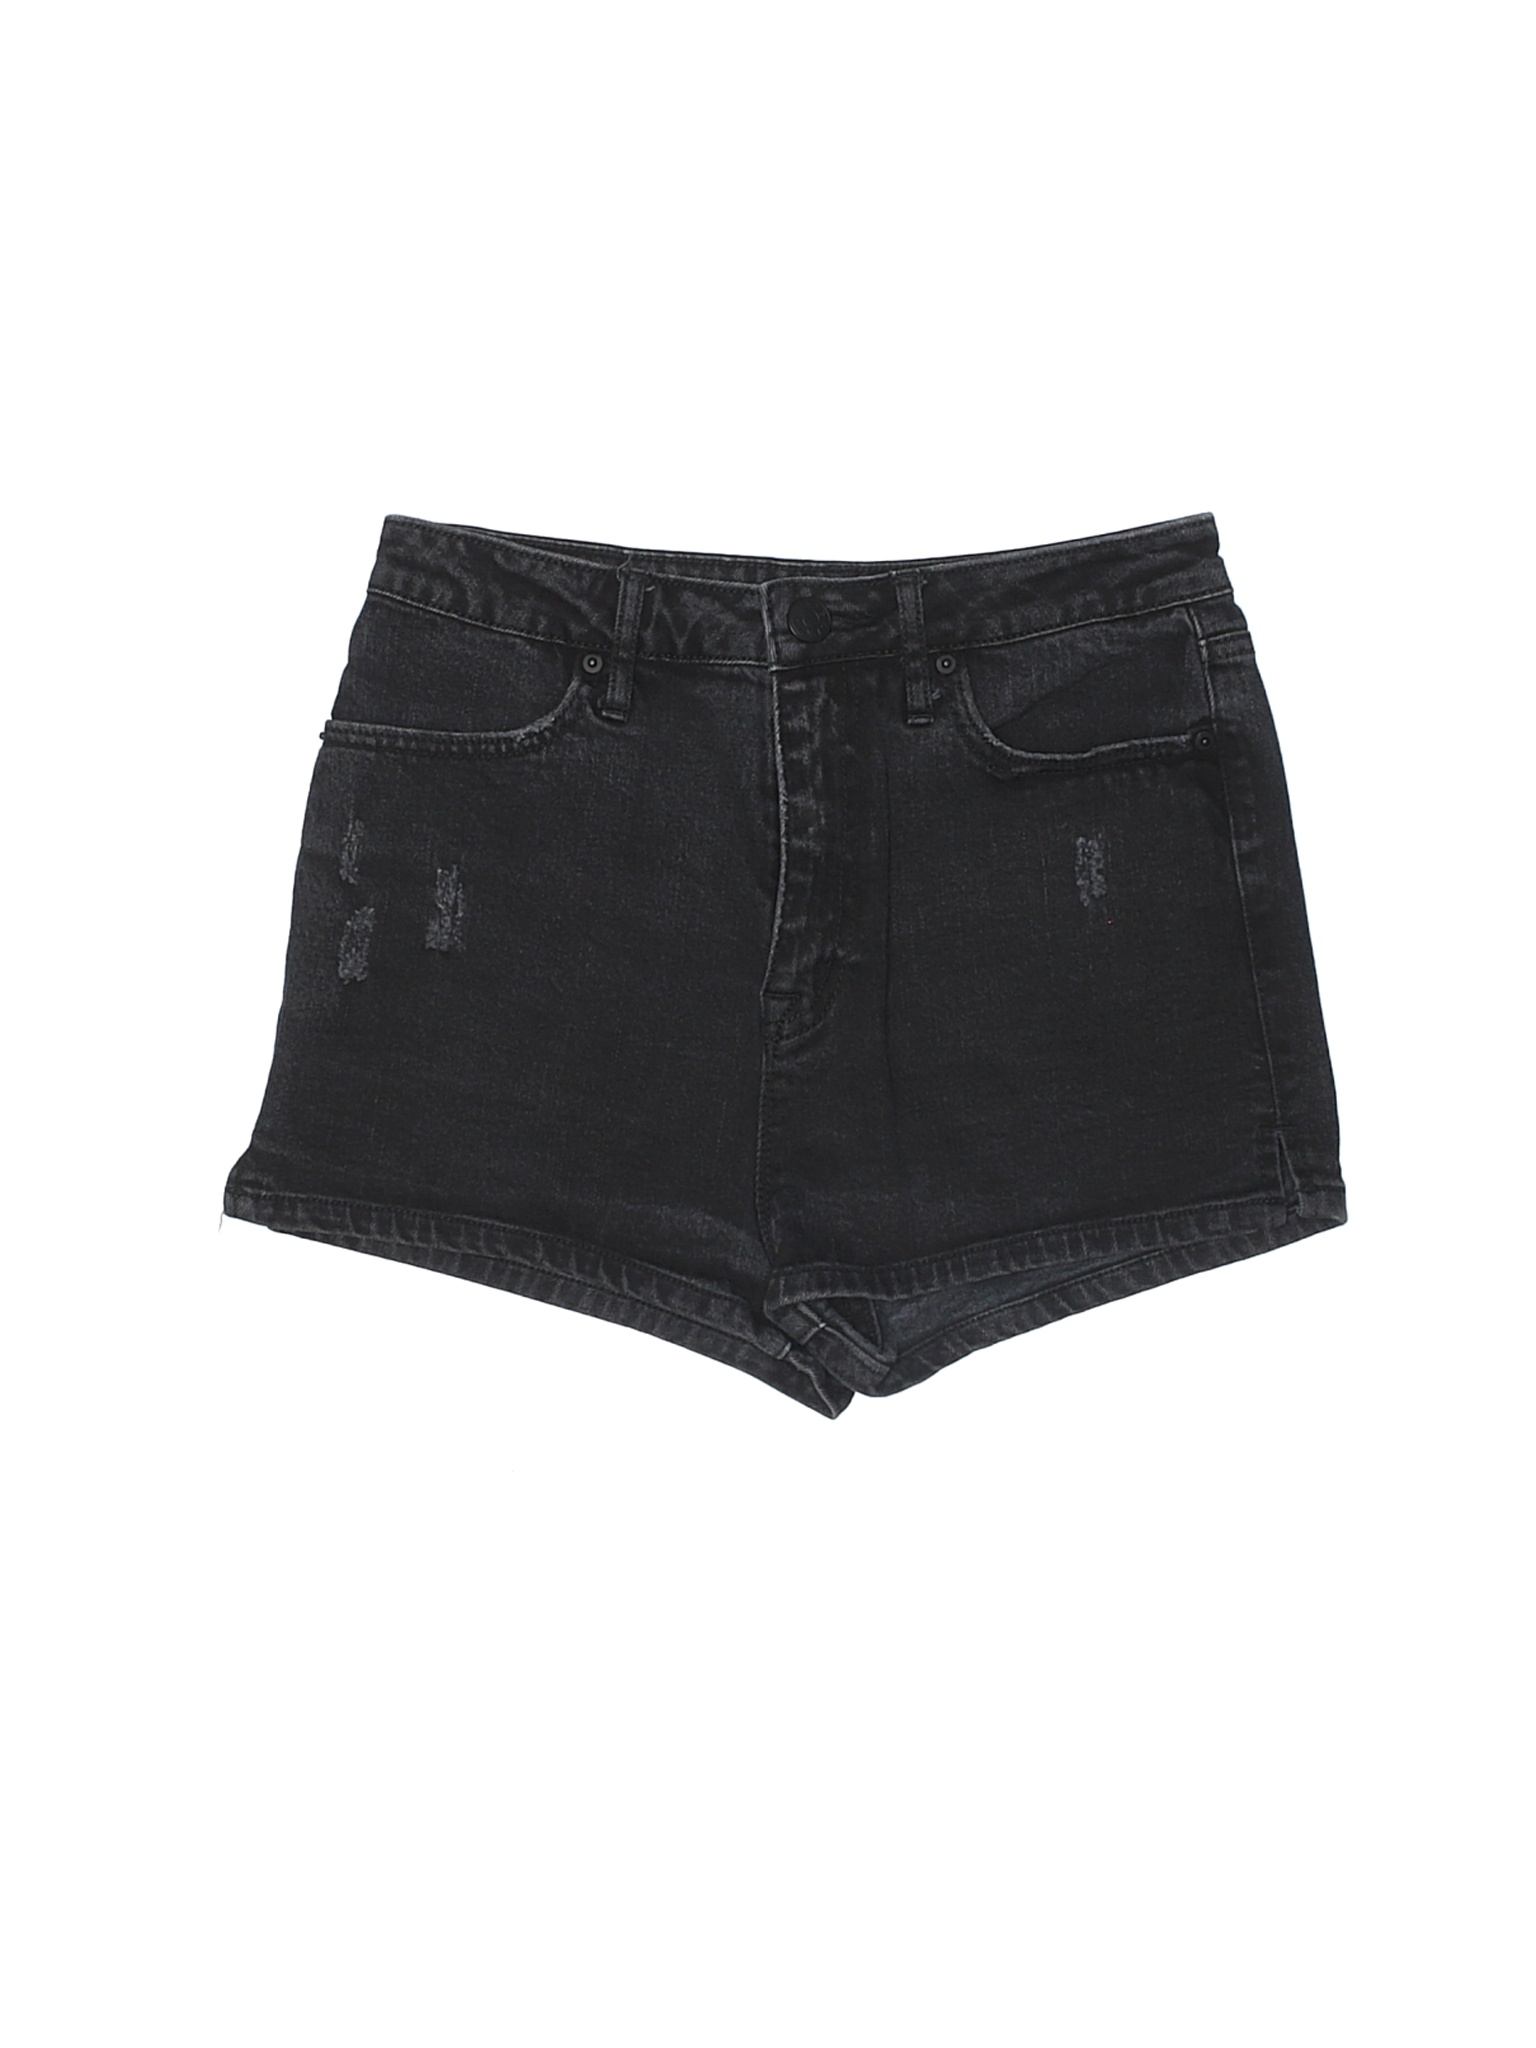 BDG Women Black Denim Shorts 27W | eBay